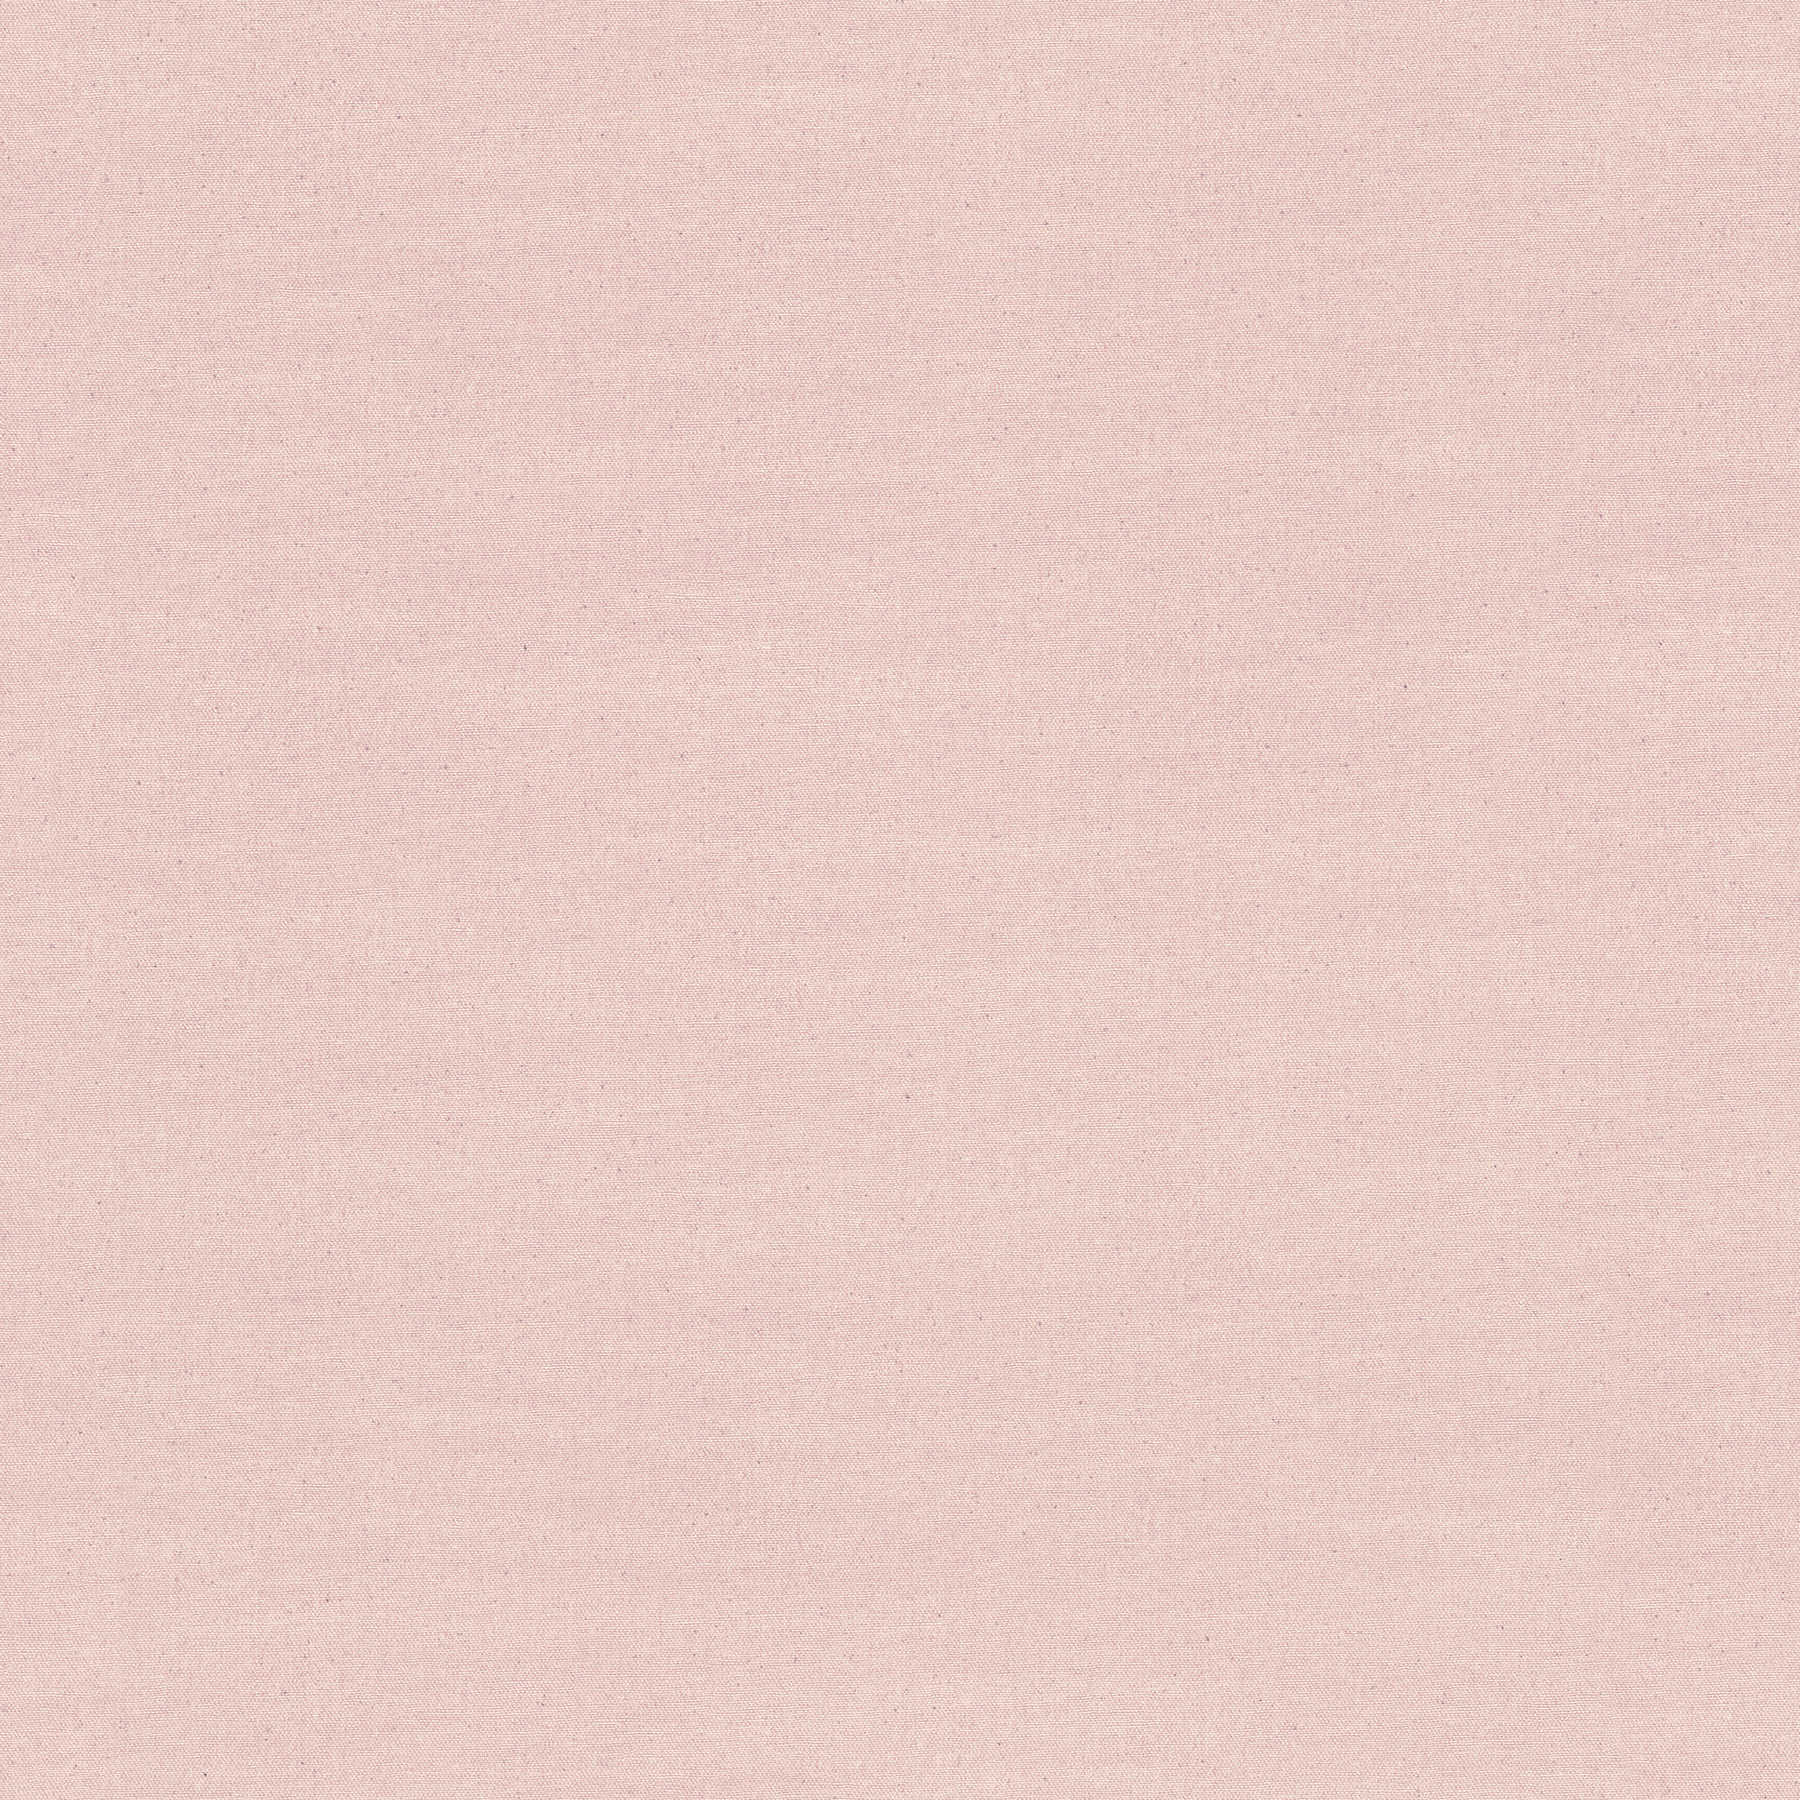 Einfarbige Tapete Rosa Textildesign mit Grauen Tupfen
